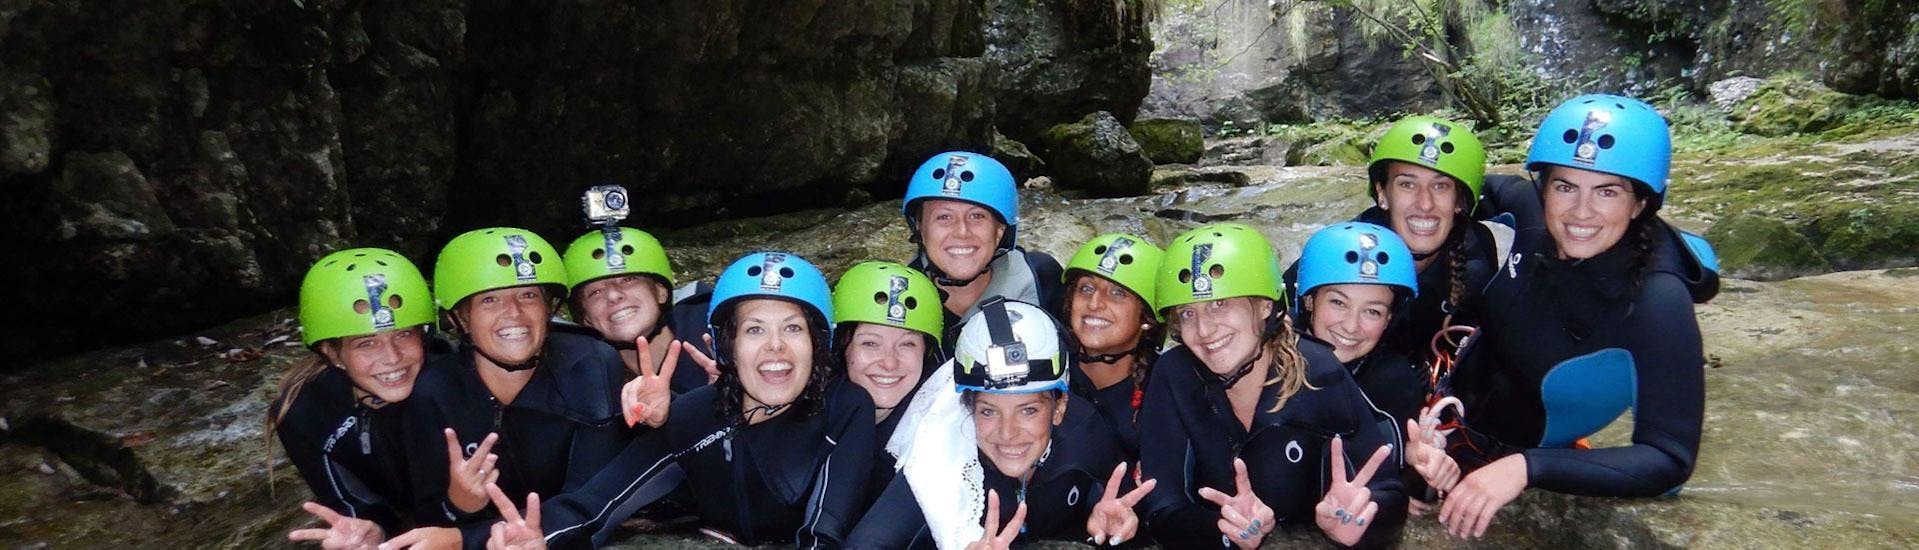 Un groupe d'amis s'amuse dans le canyon lors du Canyoning à Torrente Tignale organisé par LOLgarda.